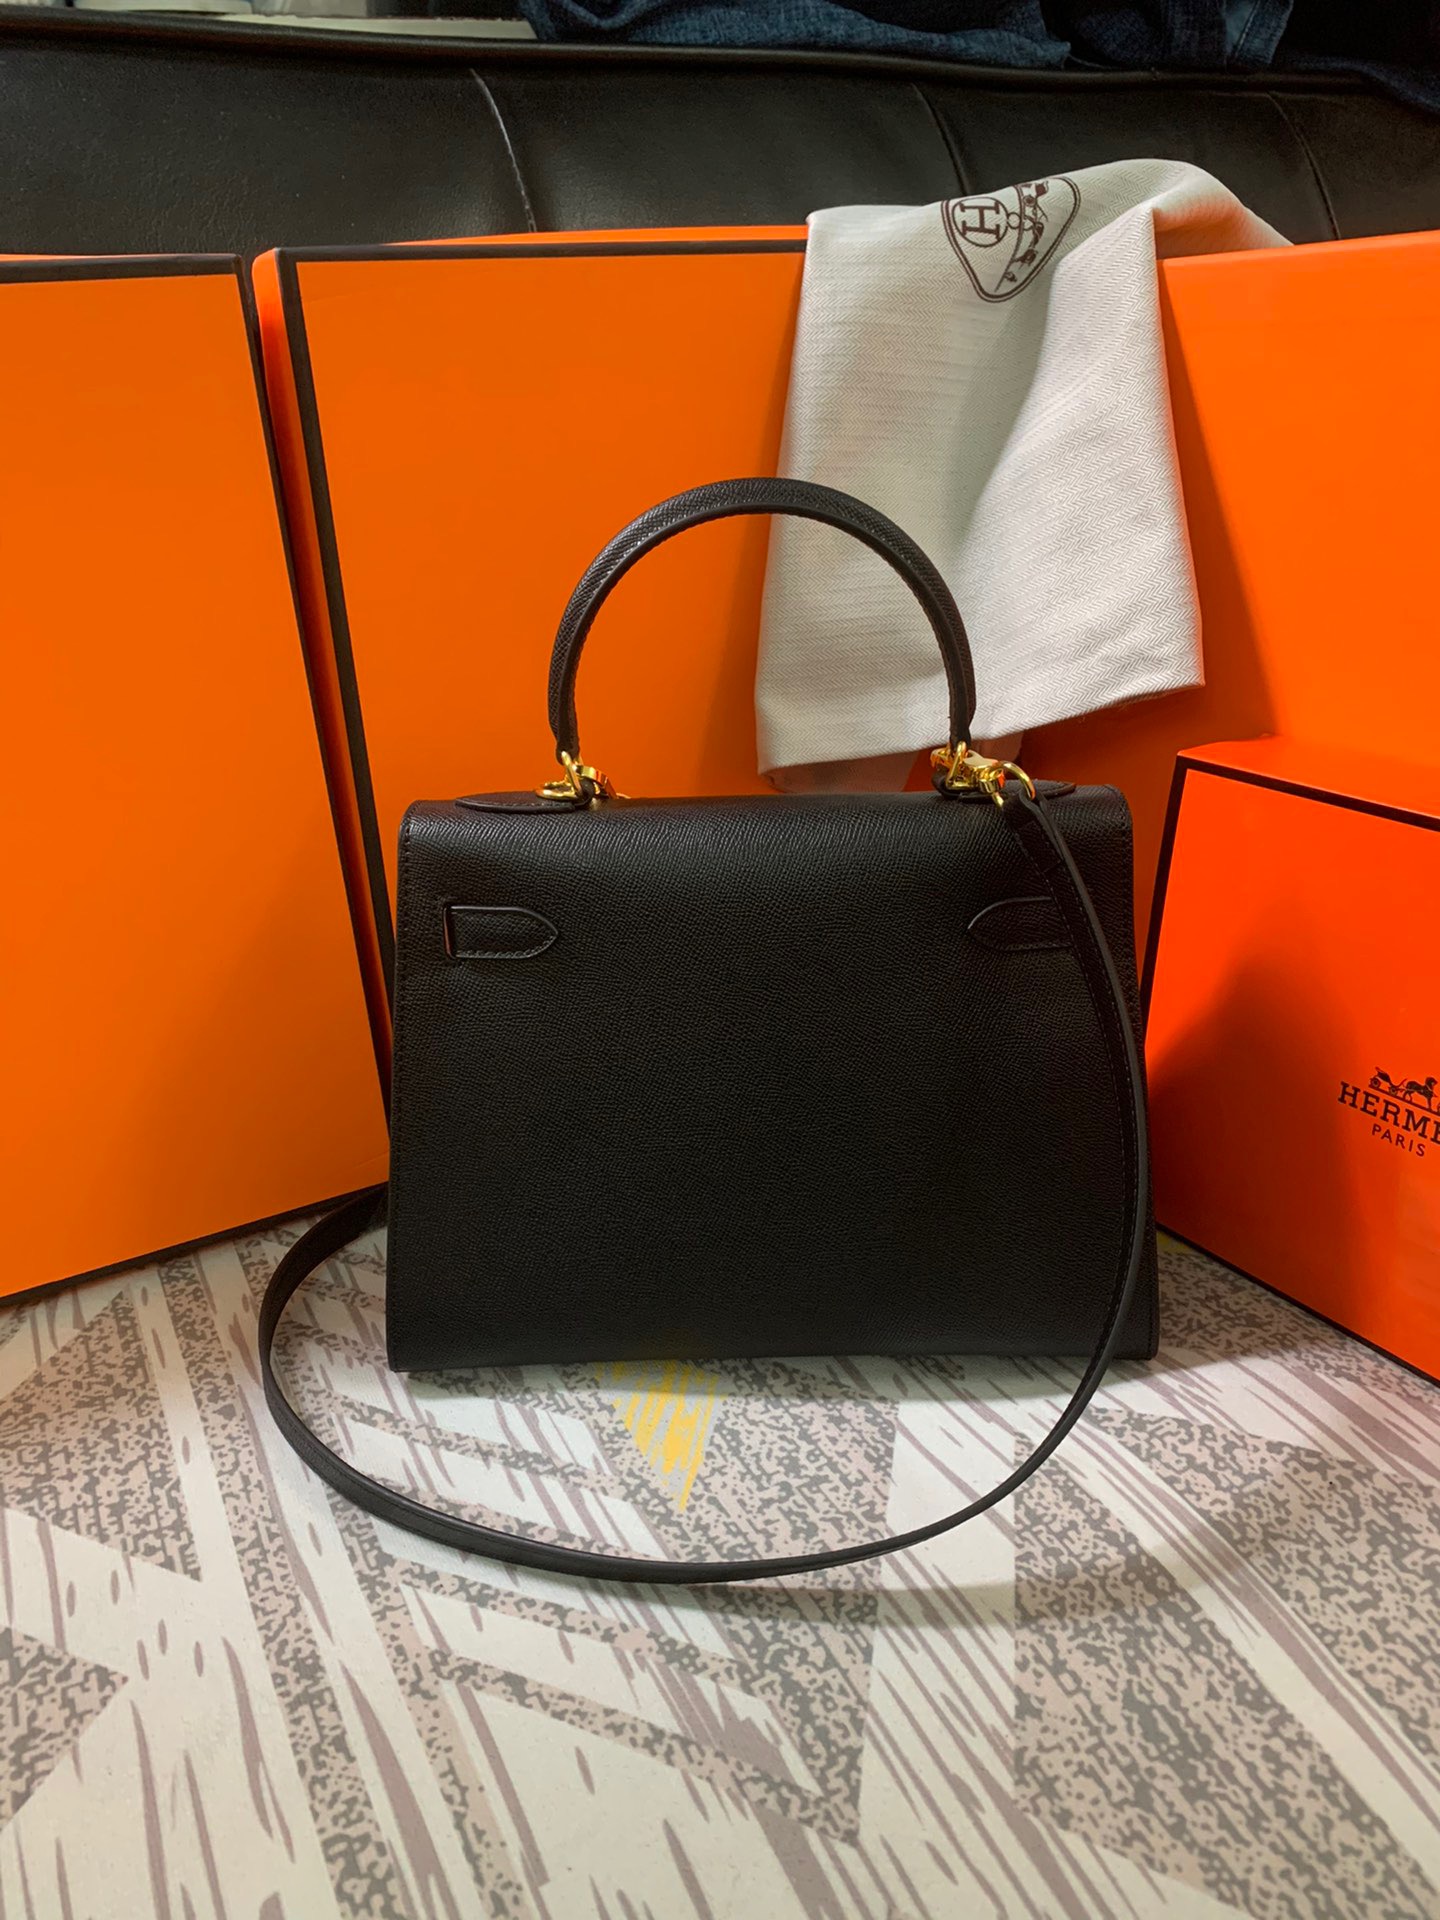 Hermes Handbags For Women # 233211, cheap Hermes Handbags, only $115!